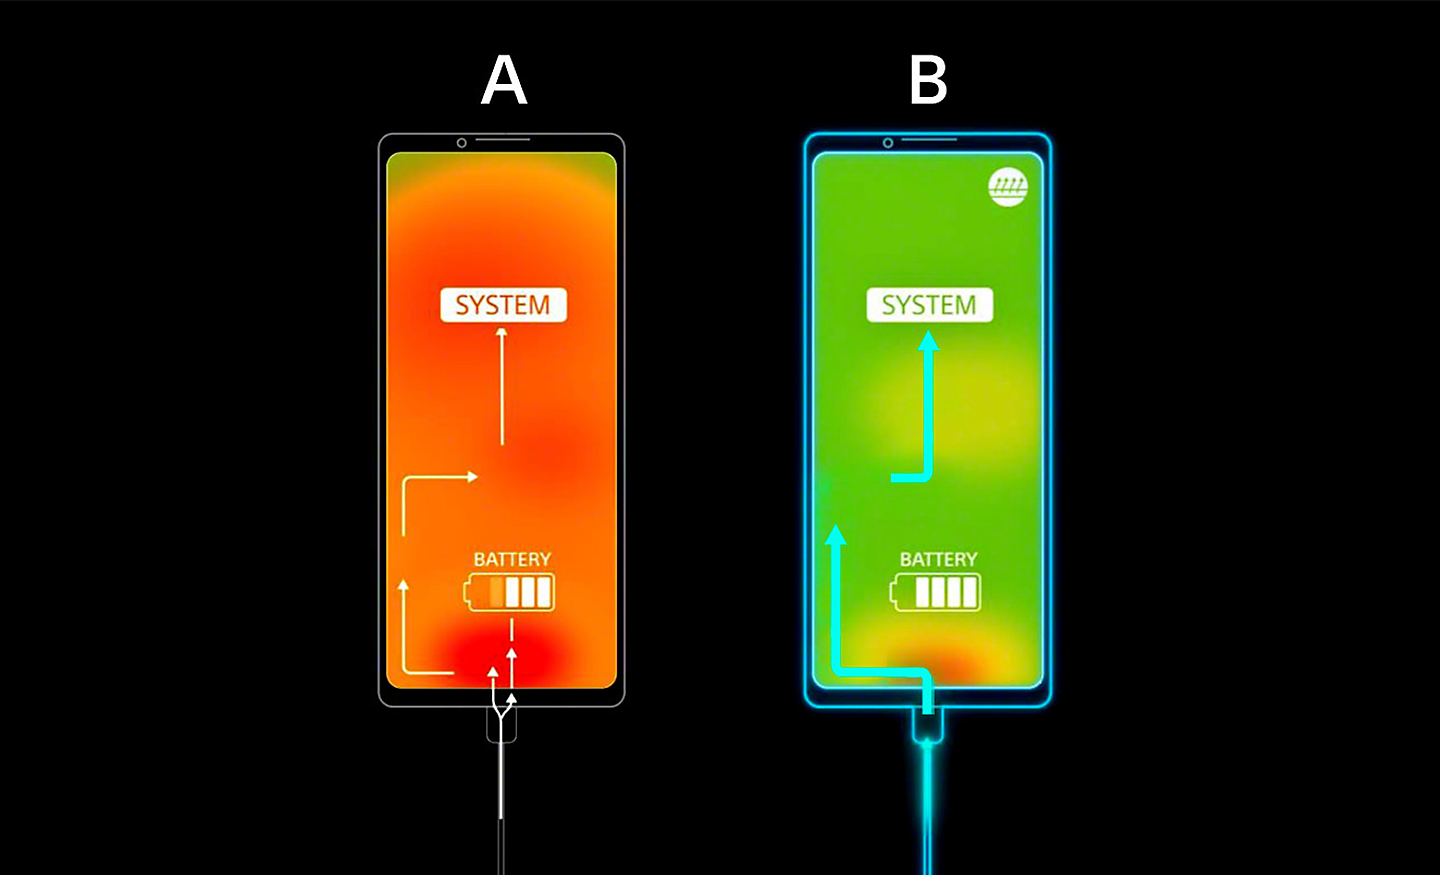 Bild som jämför två smartphones – den med hög temperatur är orange, den med låg temperatur är grön